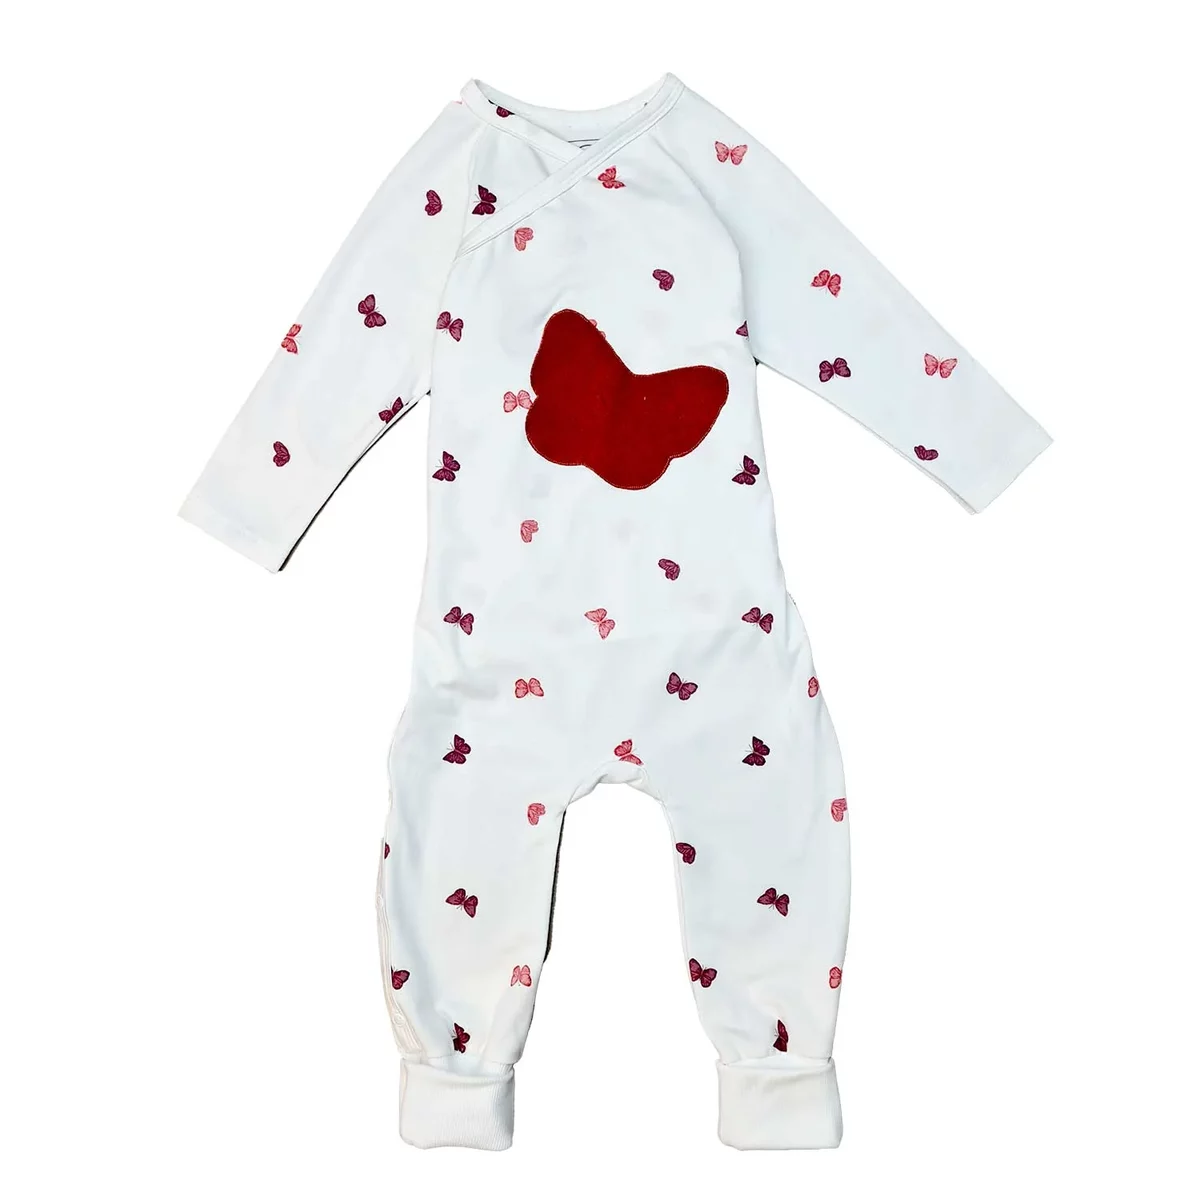 Weißer Baby-Wickelstrampler Schlafanzug mit roten Schmetterlingsmotiven und zentraler Herz-Applikation, aus weicher Bio-Baumwolle, ideal für ruhigen Schlaf.